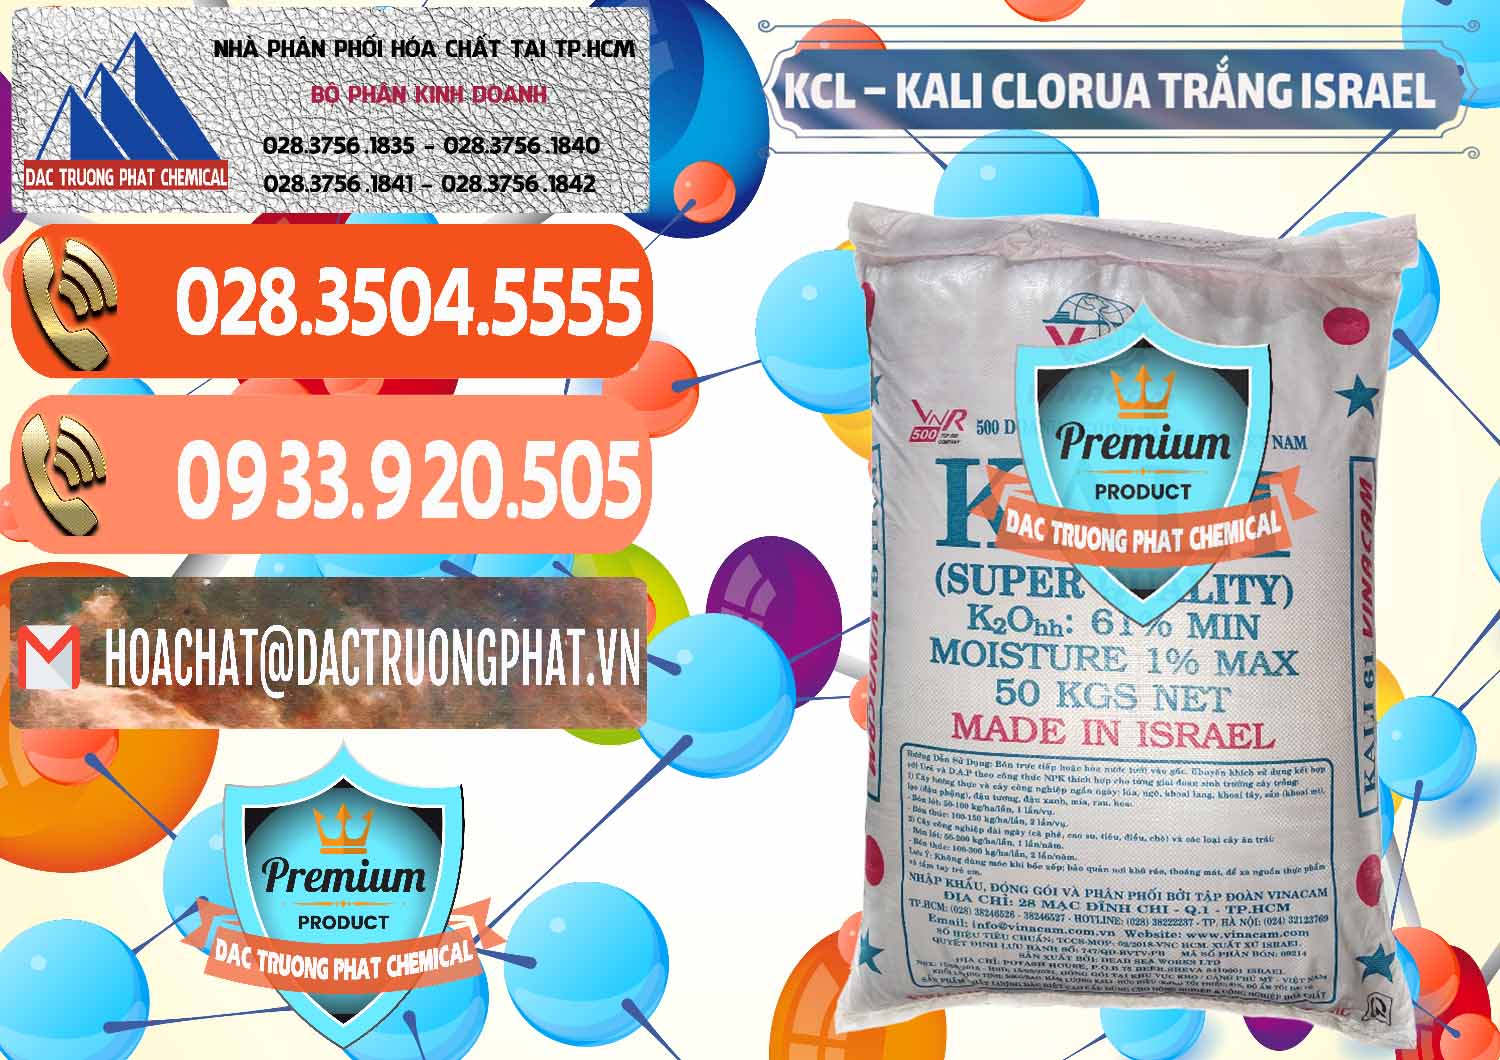 Chuyên bán & cung cấp KCL – Kali Clorua Trắng Israel - 0087 - Chuyên bán _ cung cấp hóa chất tại TP.HCM - hoachatmientay.com